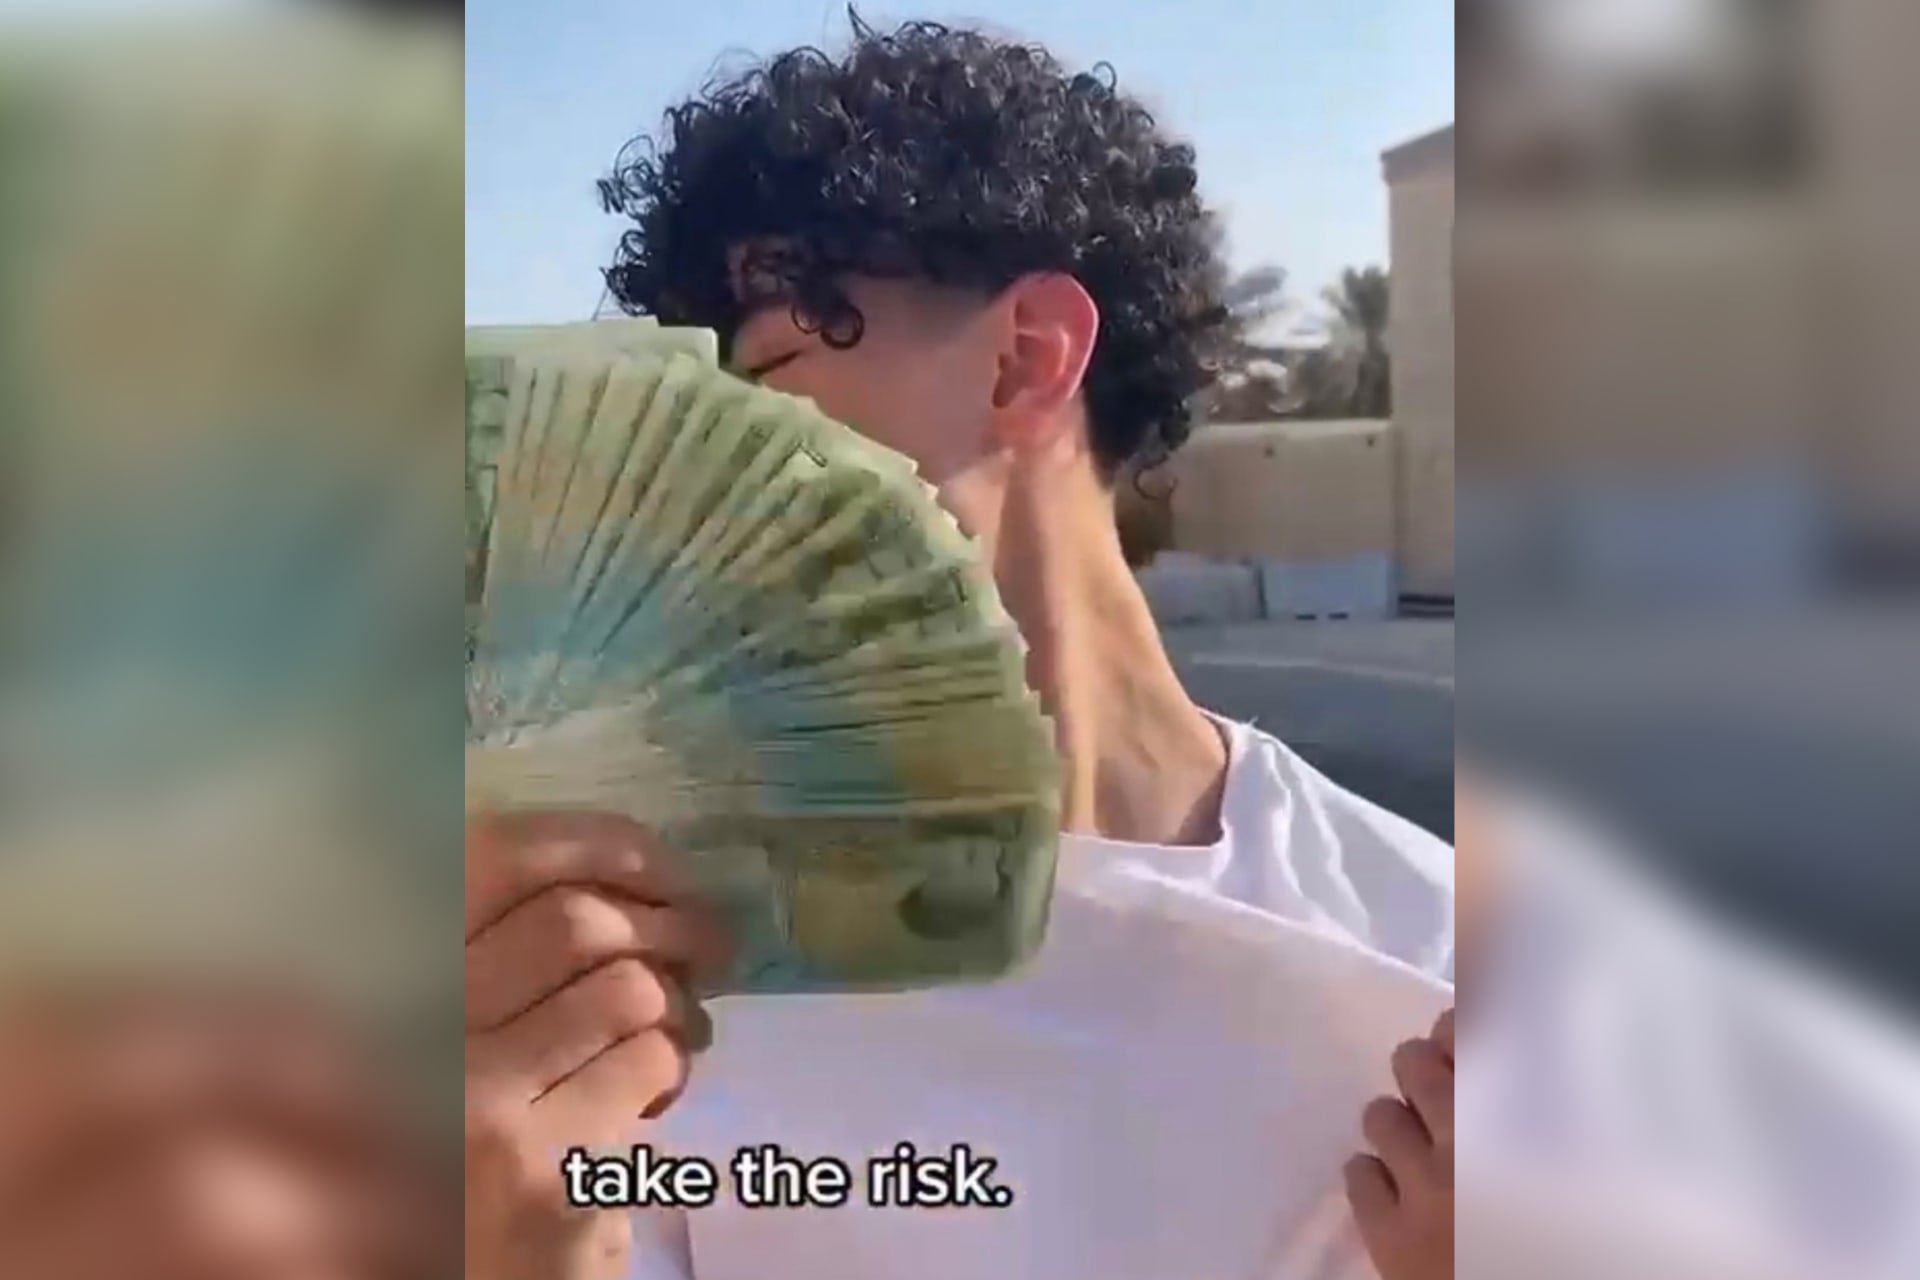 قطر.. السلطات توقف شخصًا ظهر في مقطع فيديو "مُسيىء" للعملة الوطنية